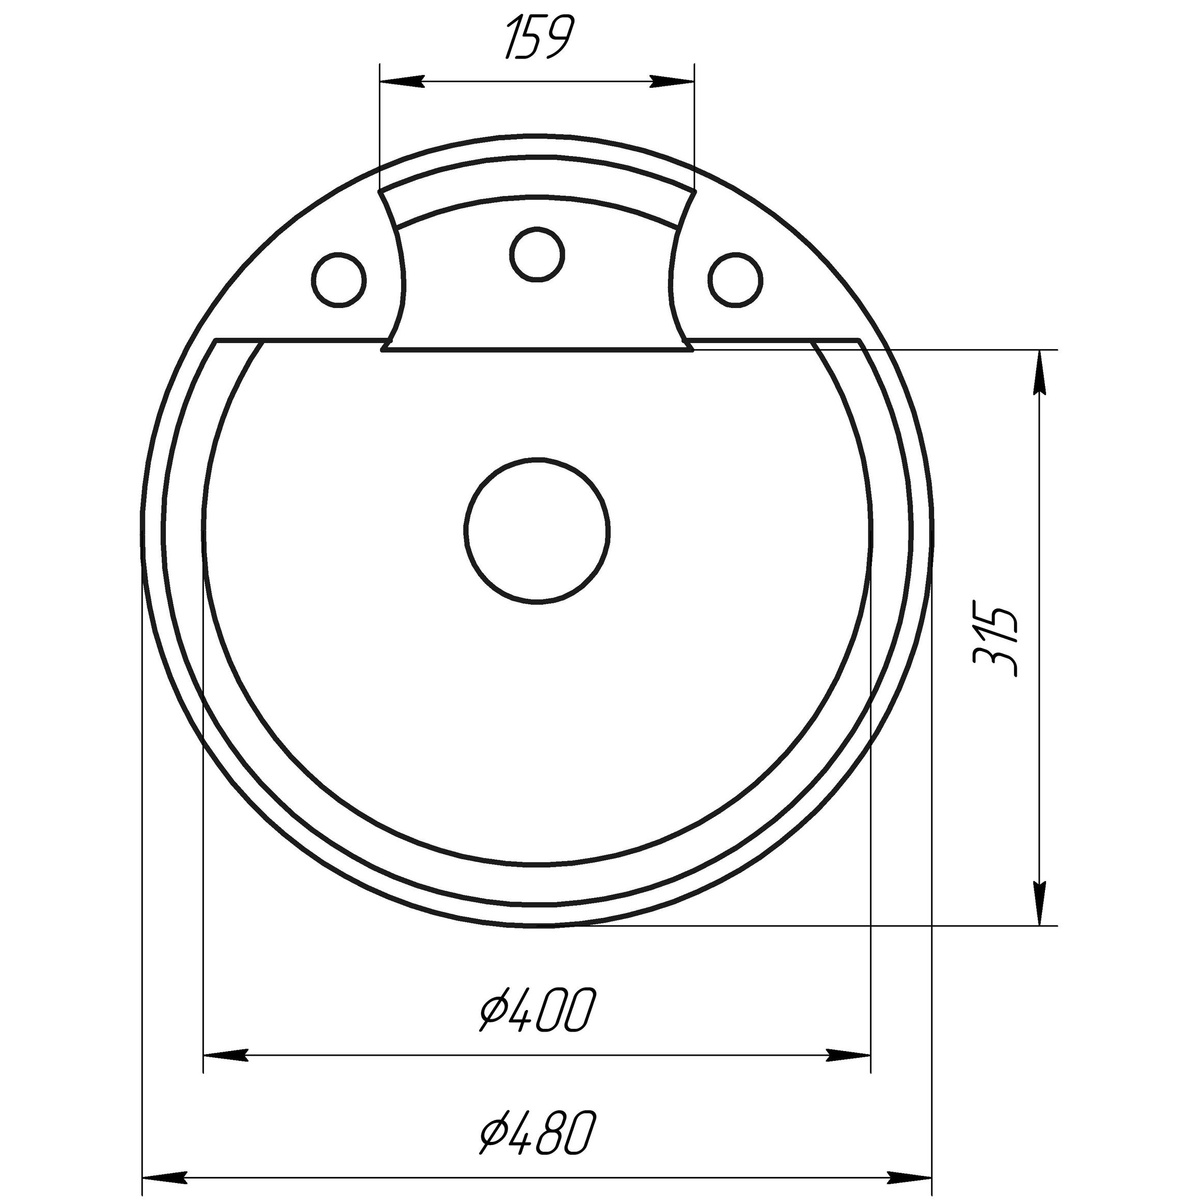 Мойка на кухню керамическая круглая GLOBUS LUX GURON 480мм x 480мм серый без сифона 000022381